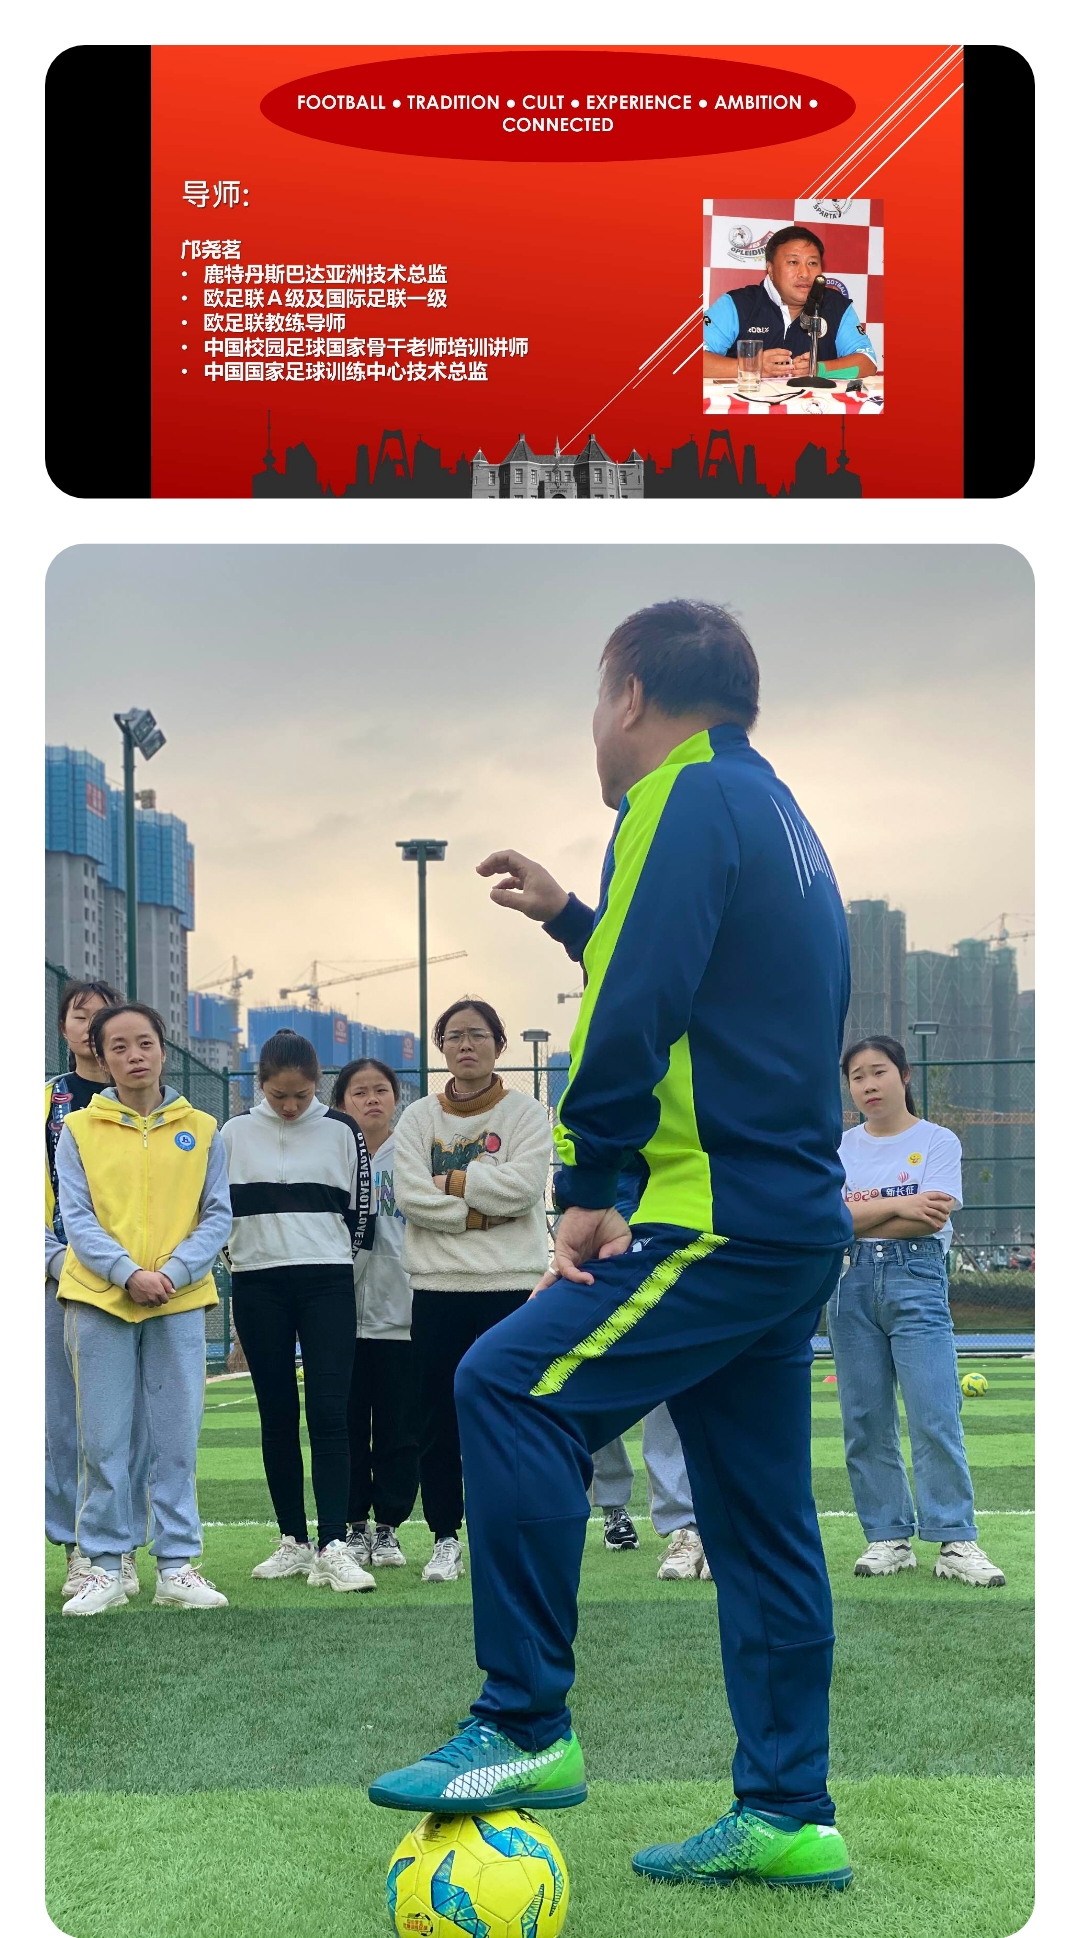 



金明幼儿园邀请专业足球教练张虎开展足球知识和技能培训